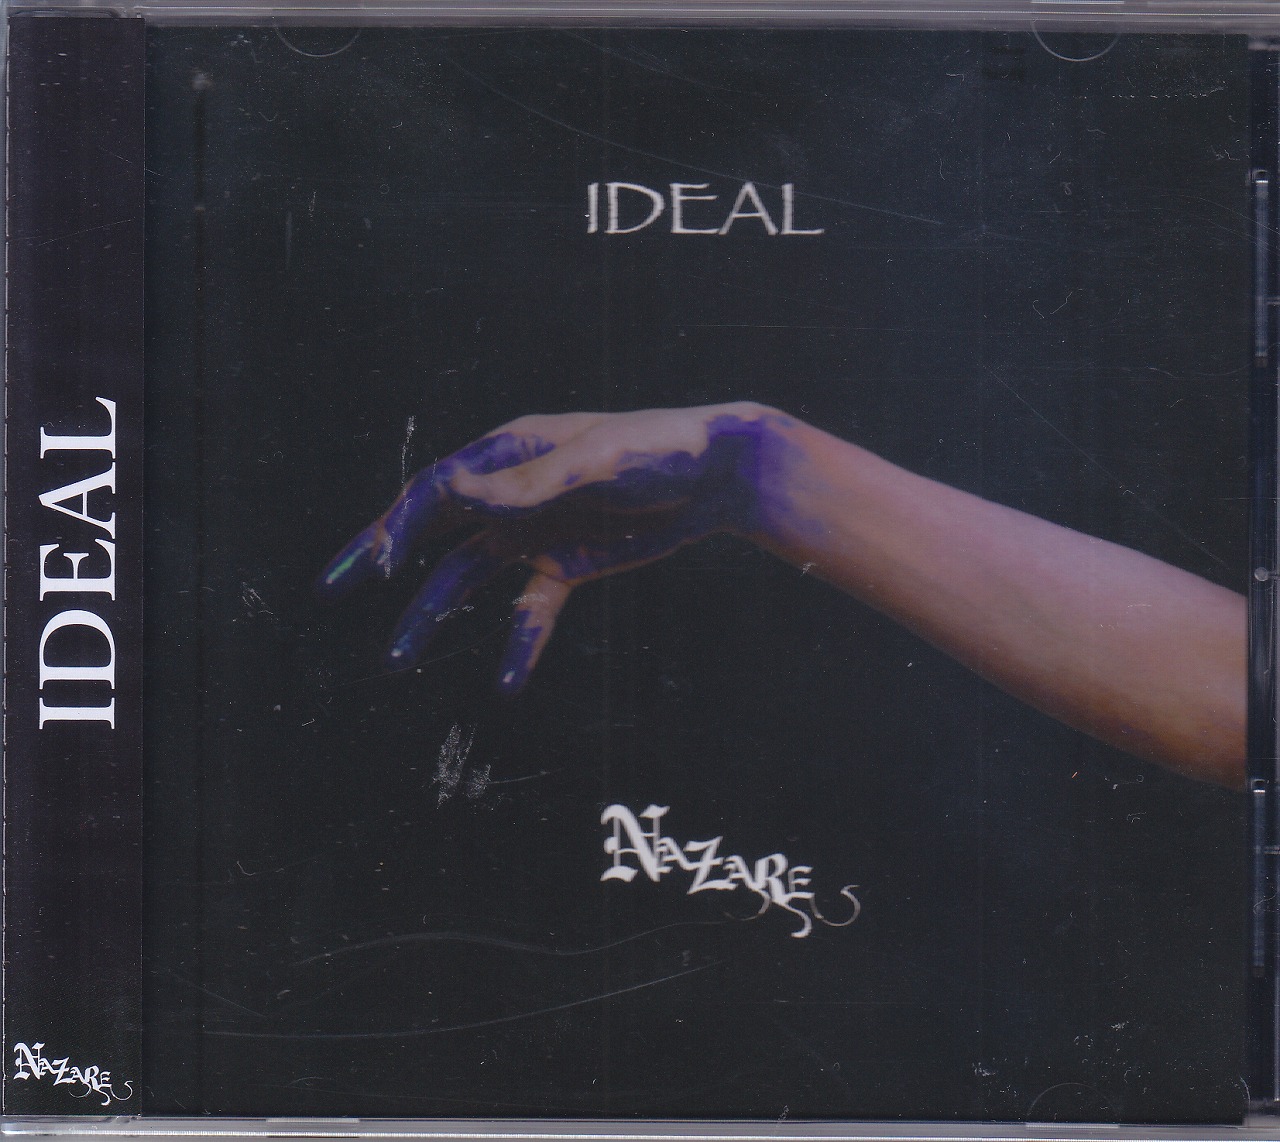 ナザレ の CD 【通常盤】IDEAL